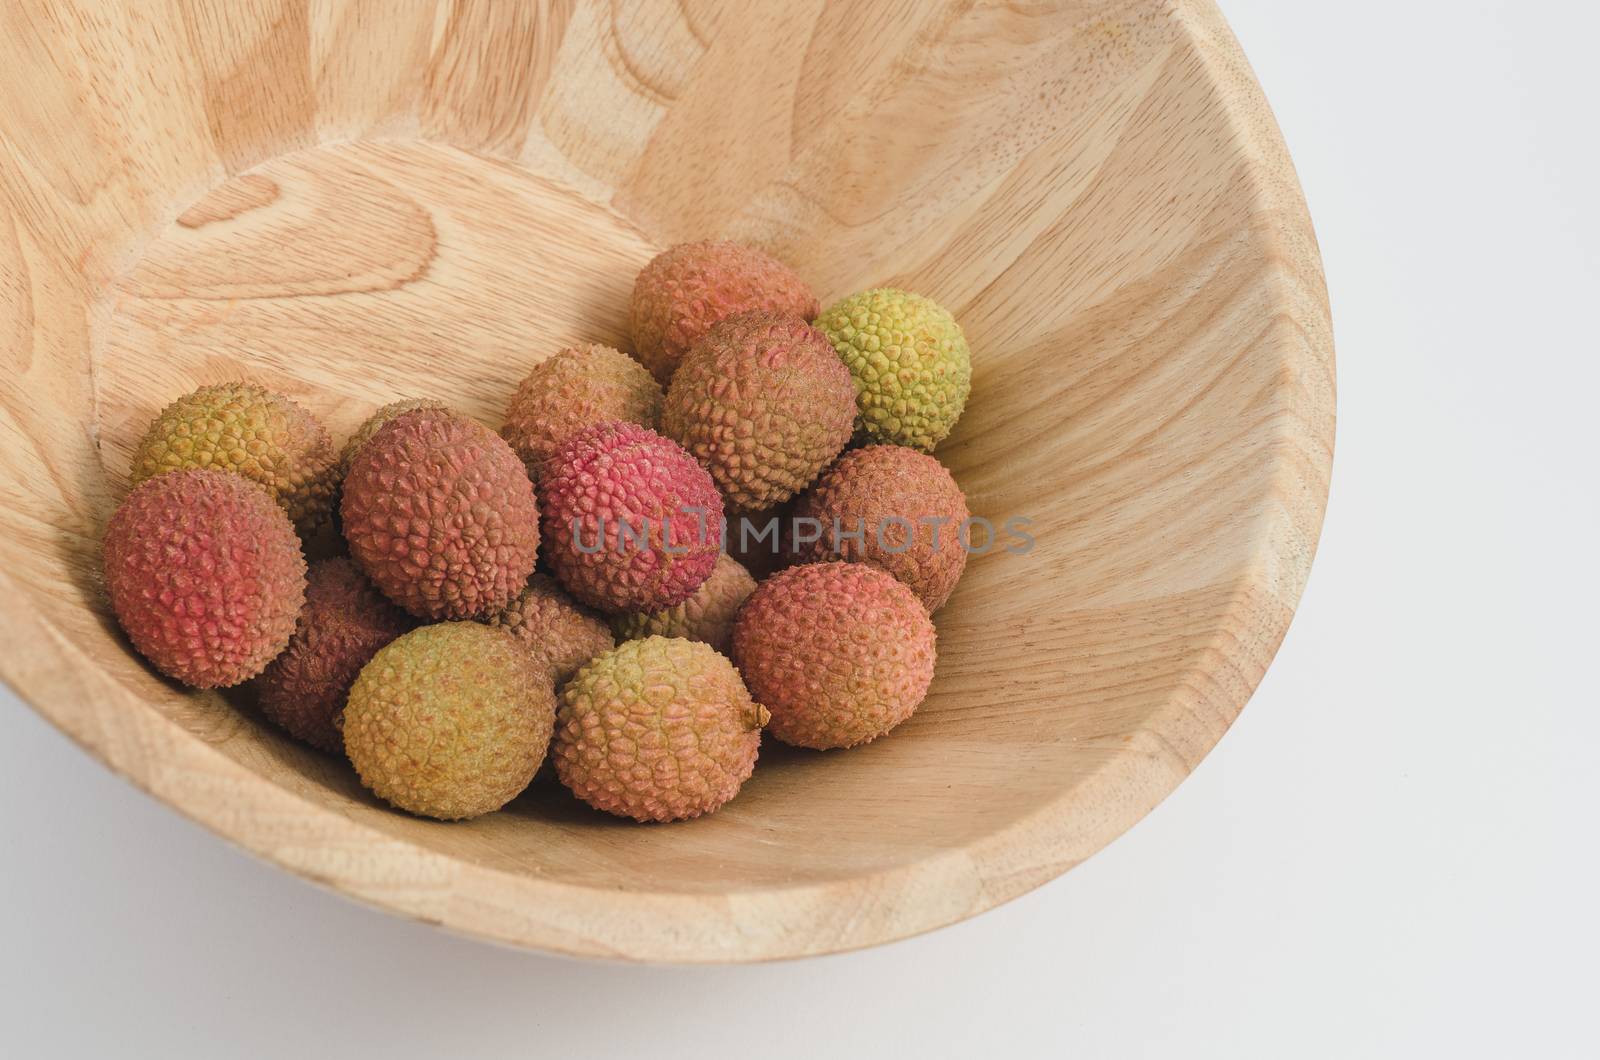 lychee fruit in a bowl by mirekpesek